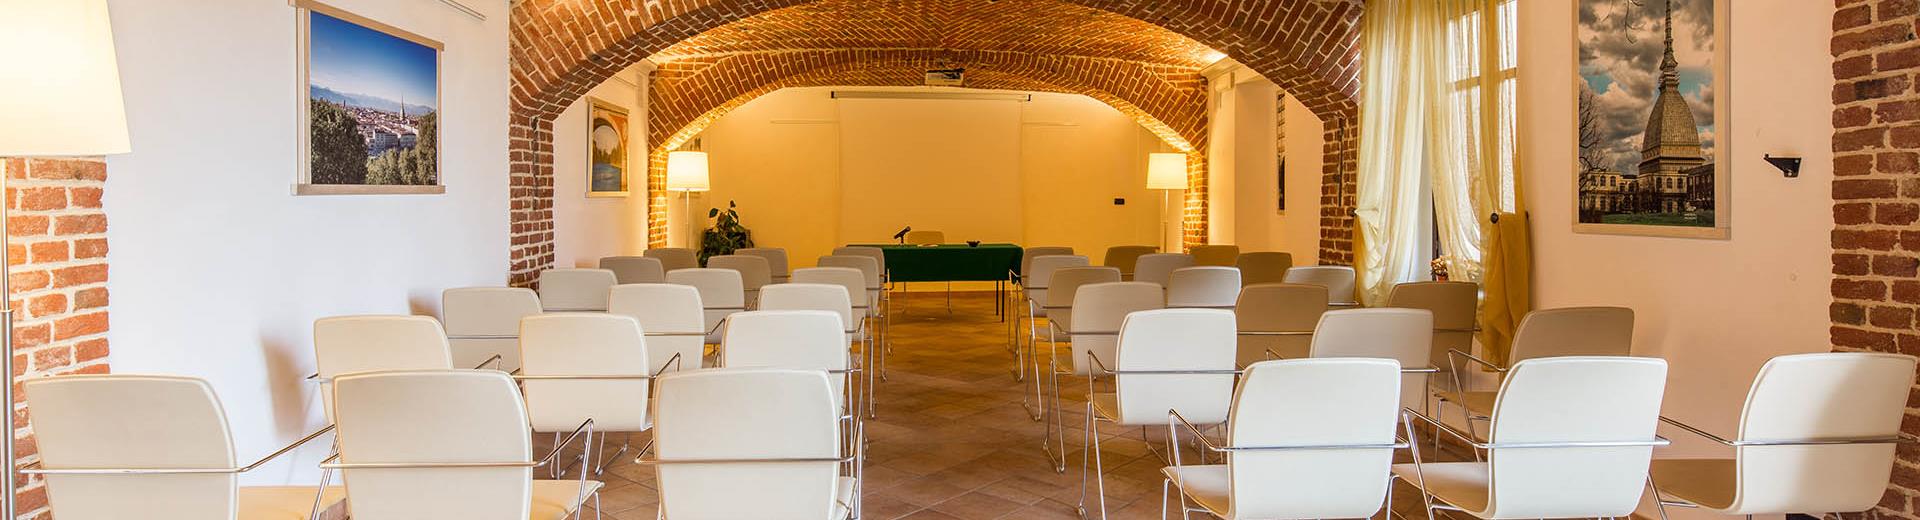 Una sala riunioni esclusiva per i tuoi eventi?  A 10 minuti dall''aeroporto di Torino Caselle, ... scegli la garanzia Best Western Plus!